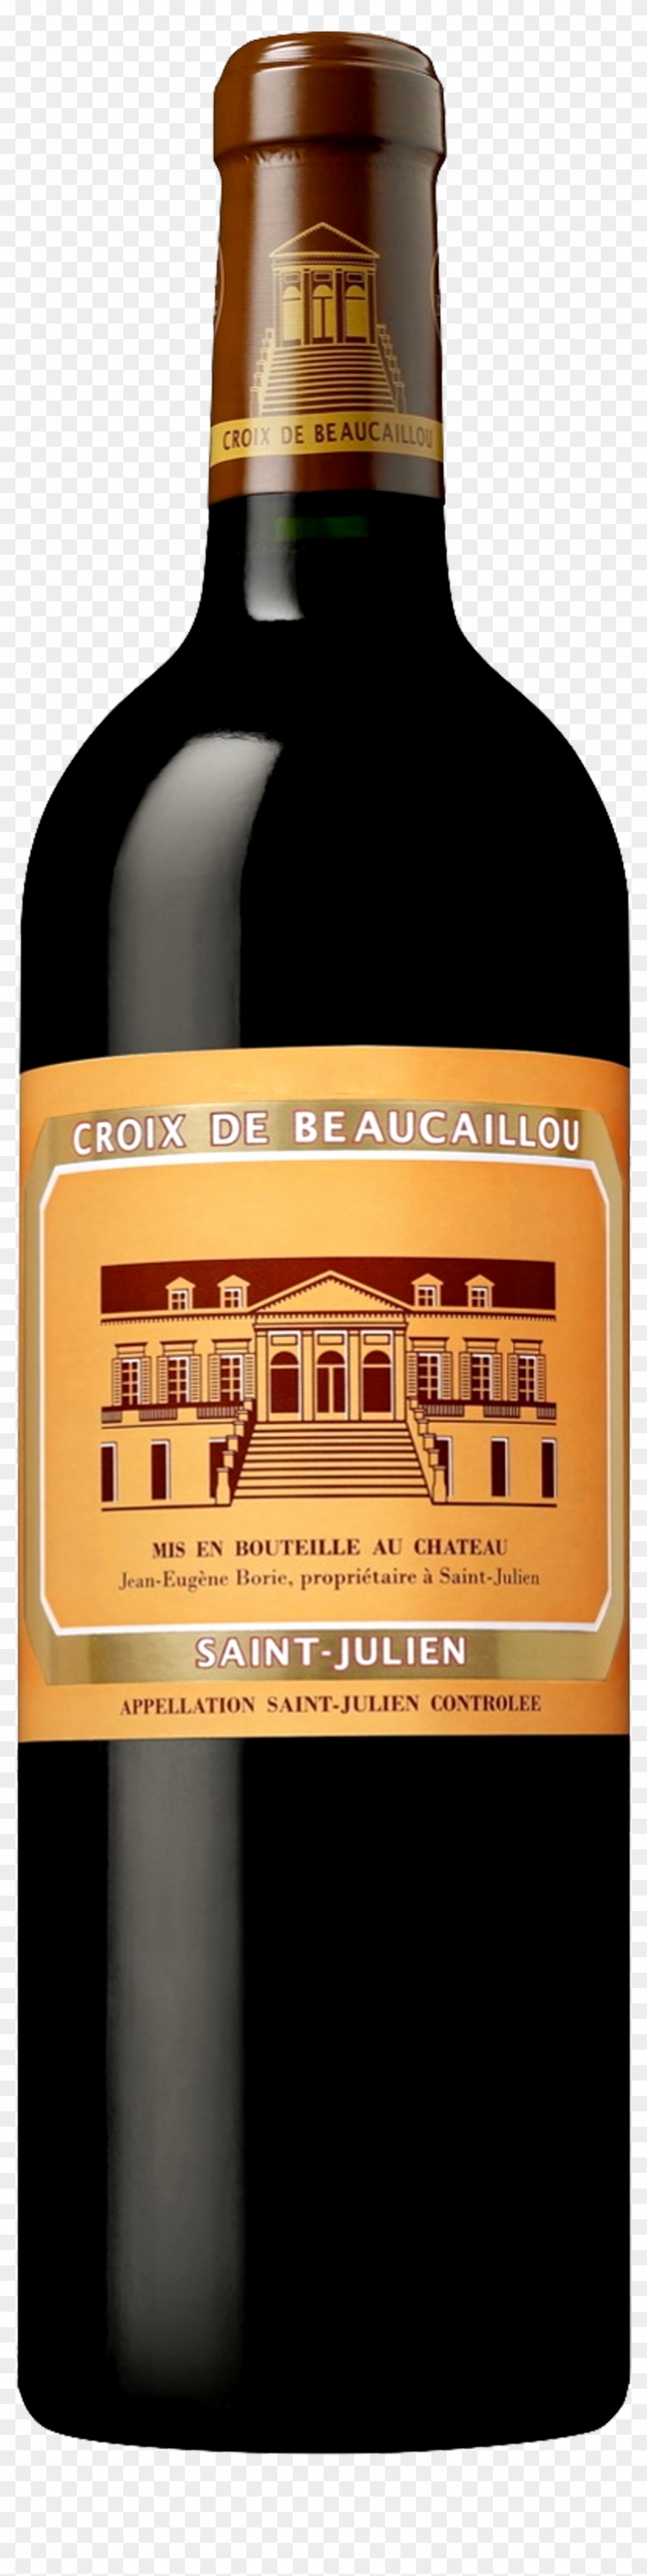 Image Of Product La Croix De Beaucaillou, St Julien - Château Ducru Beaucaillou Croix De Beaucaillou Clipart